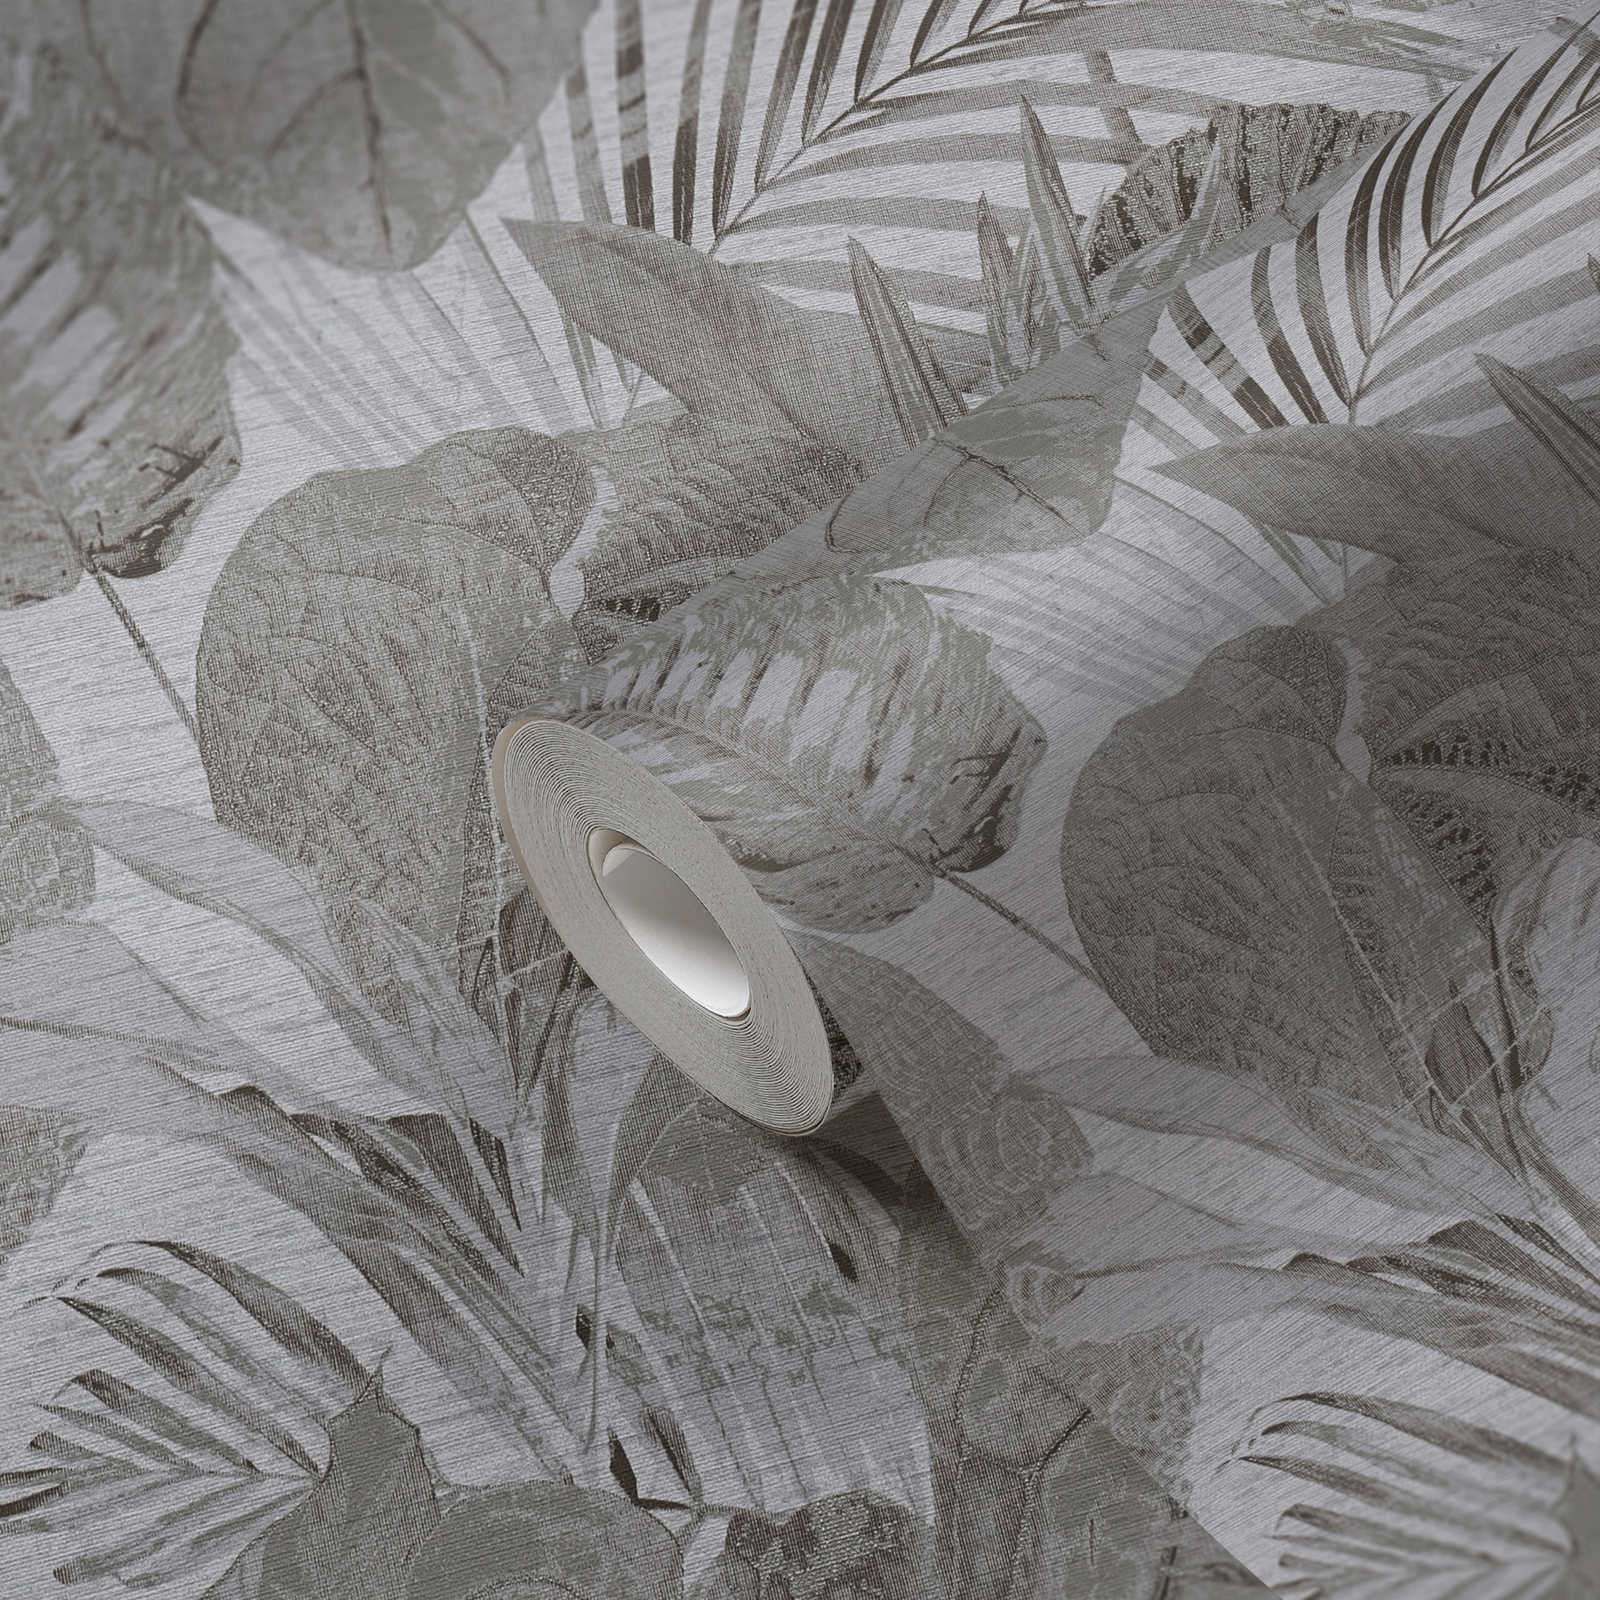             Onderlaag behang met junglepatroon licht gestructureerd, mat - grijs, antraciet
        